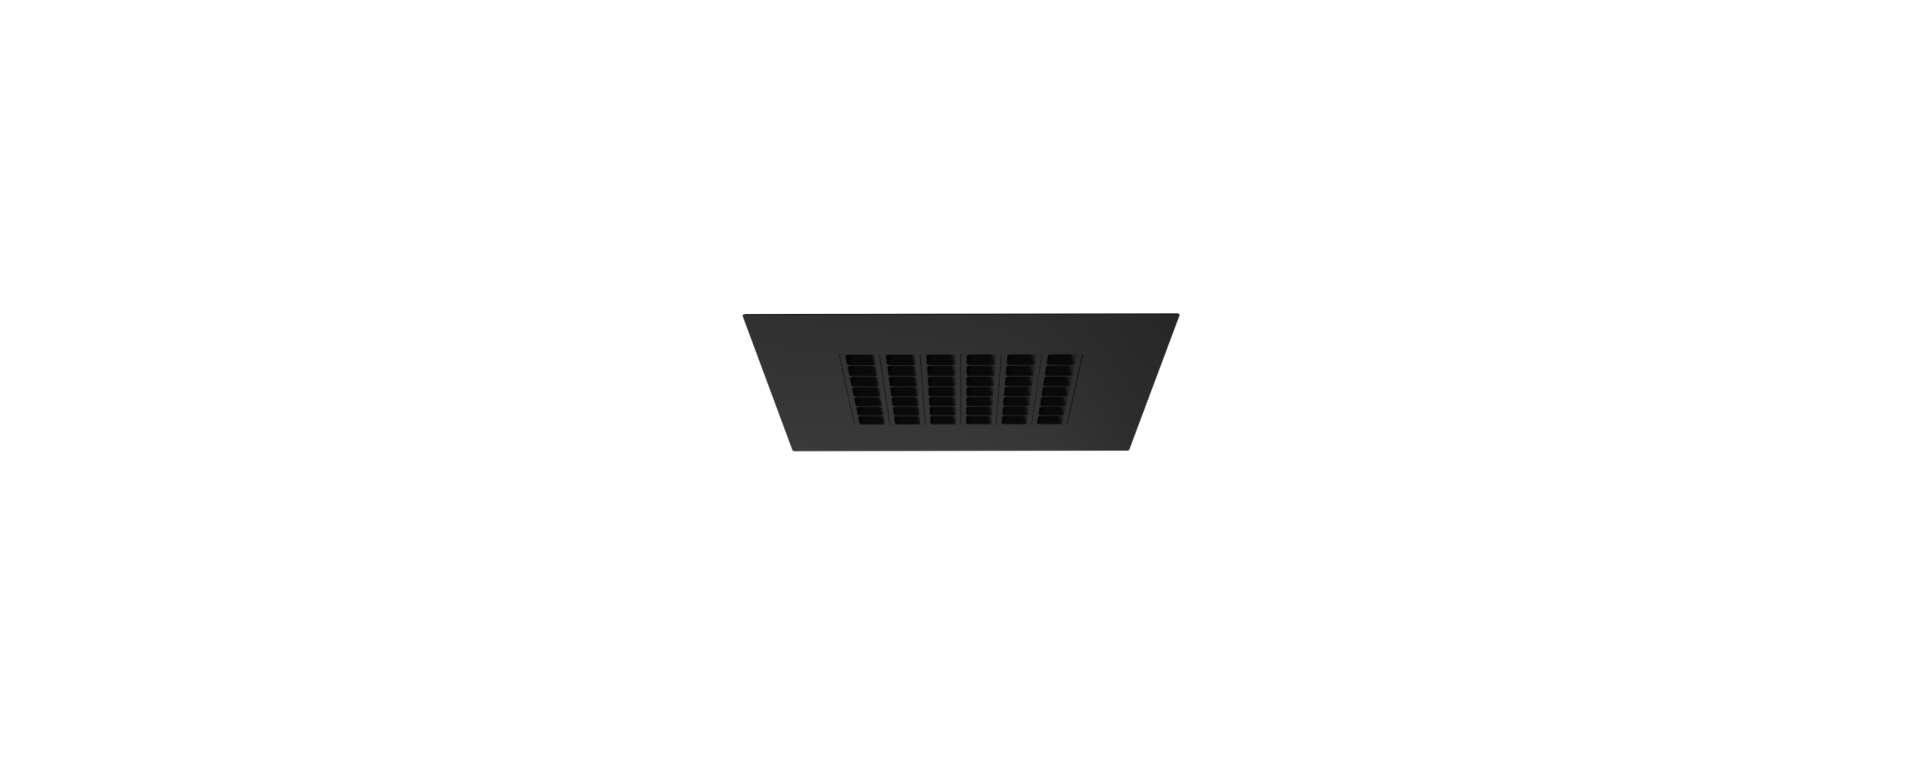 MODUX PS2 empotrado con borde reflector negro negro 1920x780px